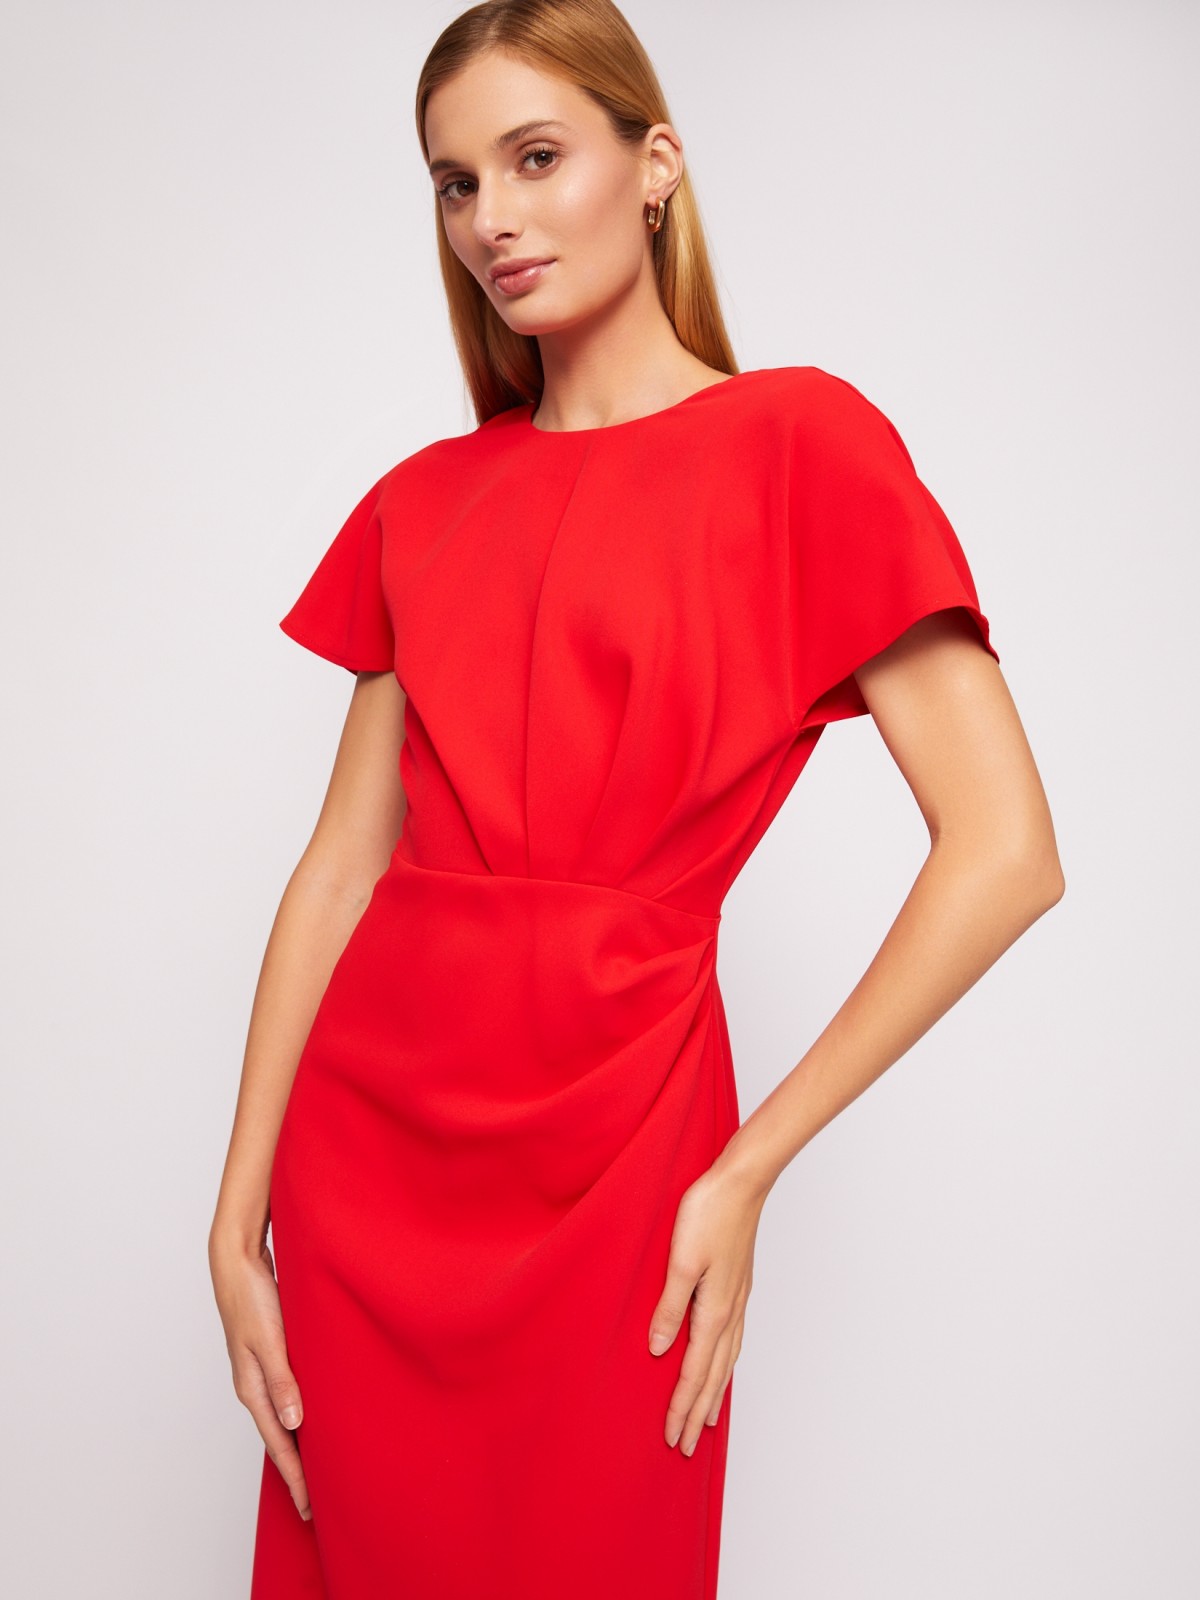 Платье длины миди с драпировкой и вырезом на спине zolla 024218239311, цвет красный, размер XS - фото 2